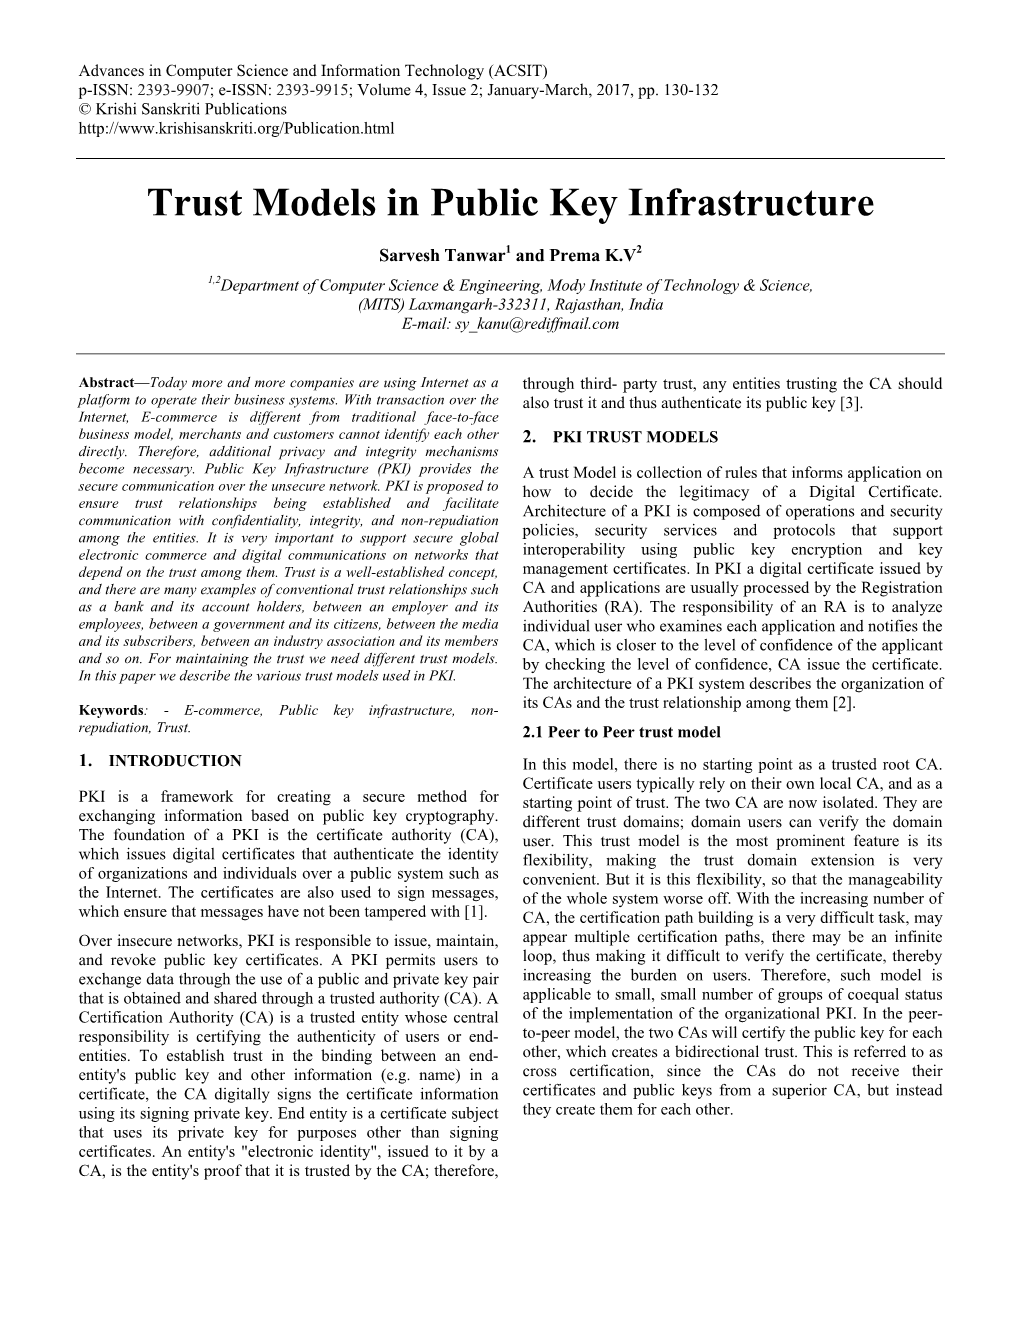 Trust Models in Public Key Infrastructure